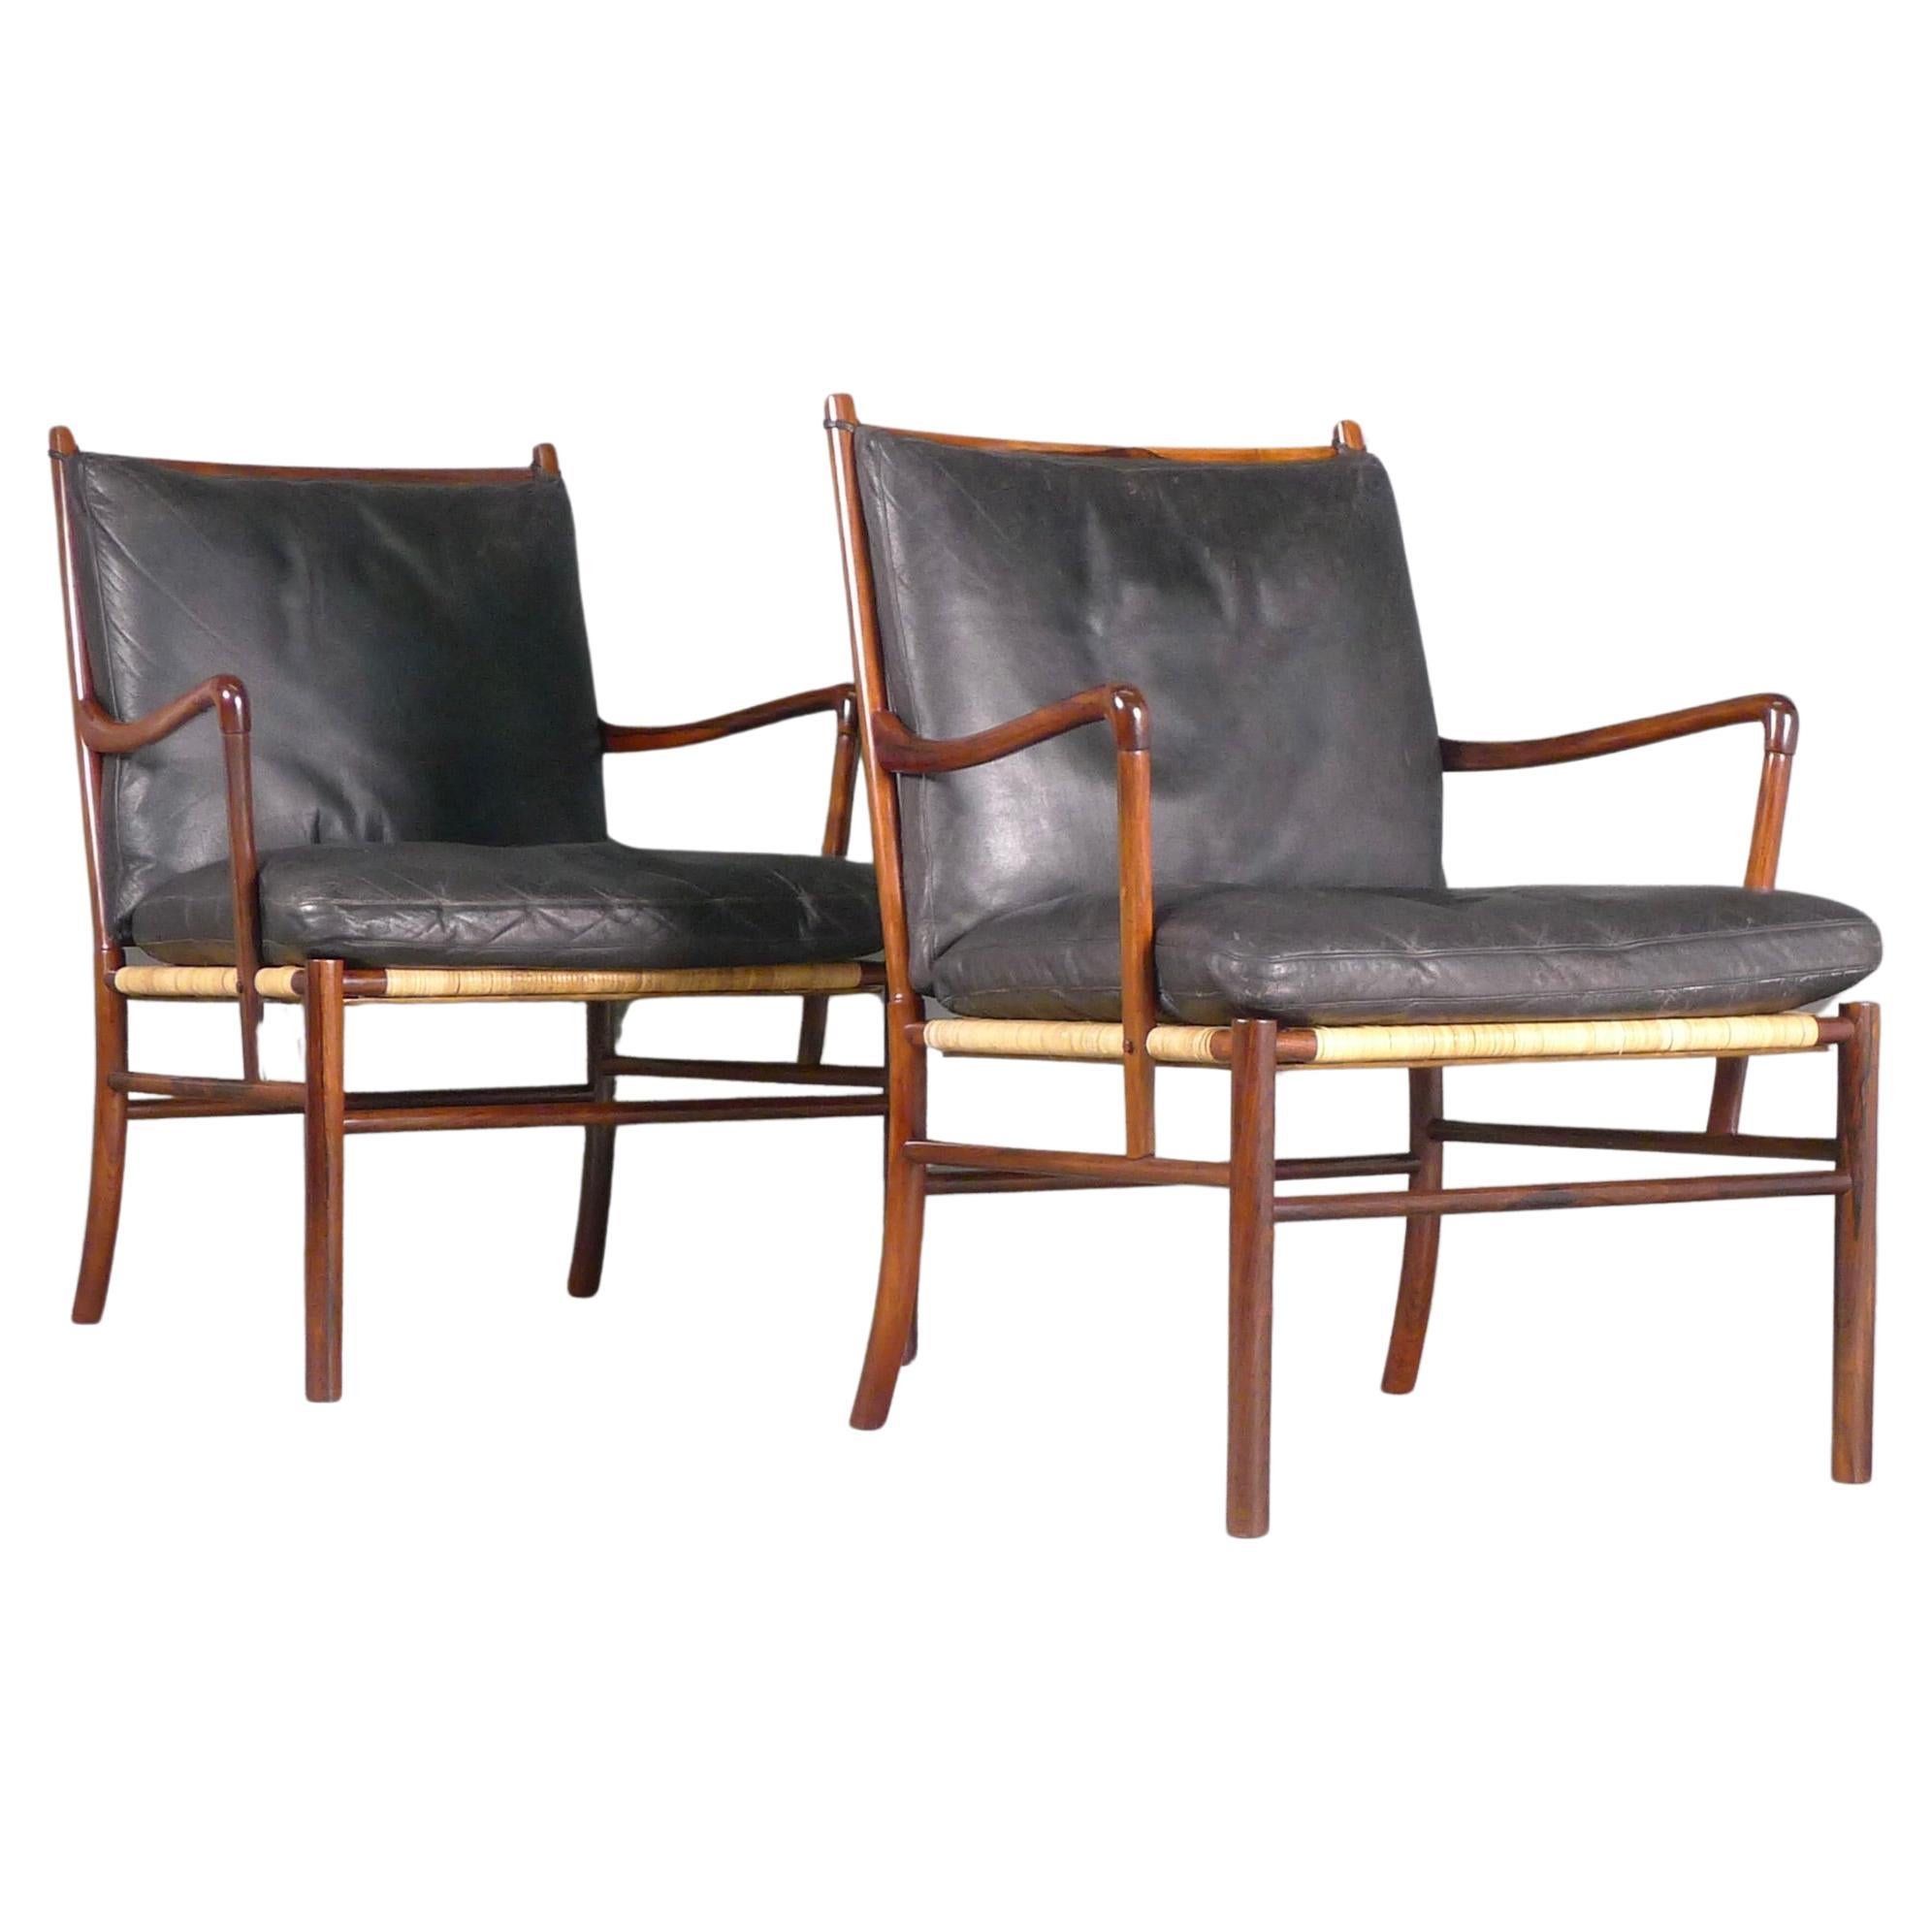 Paire de chaises coloniales Ole Wanscher, modèle PJ149, 1ère édition 1949, bois de rose